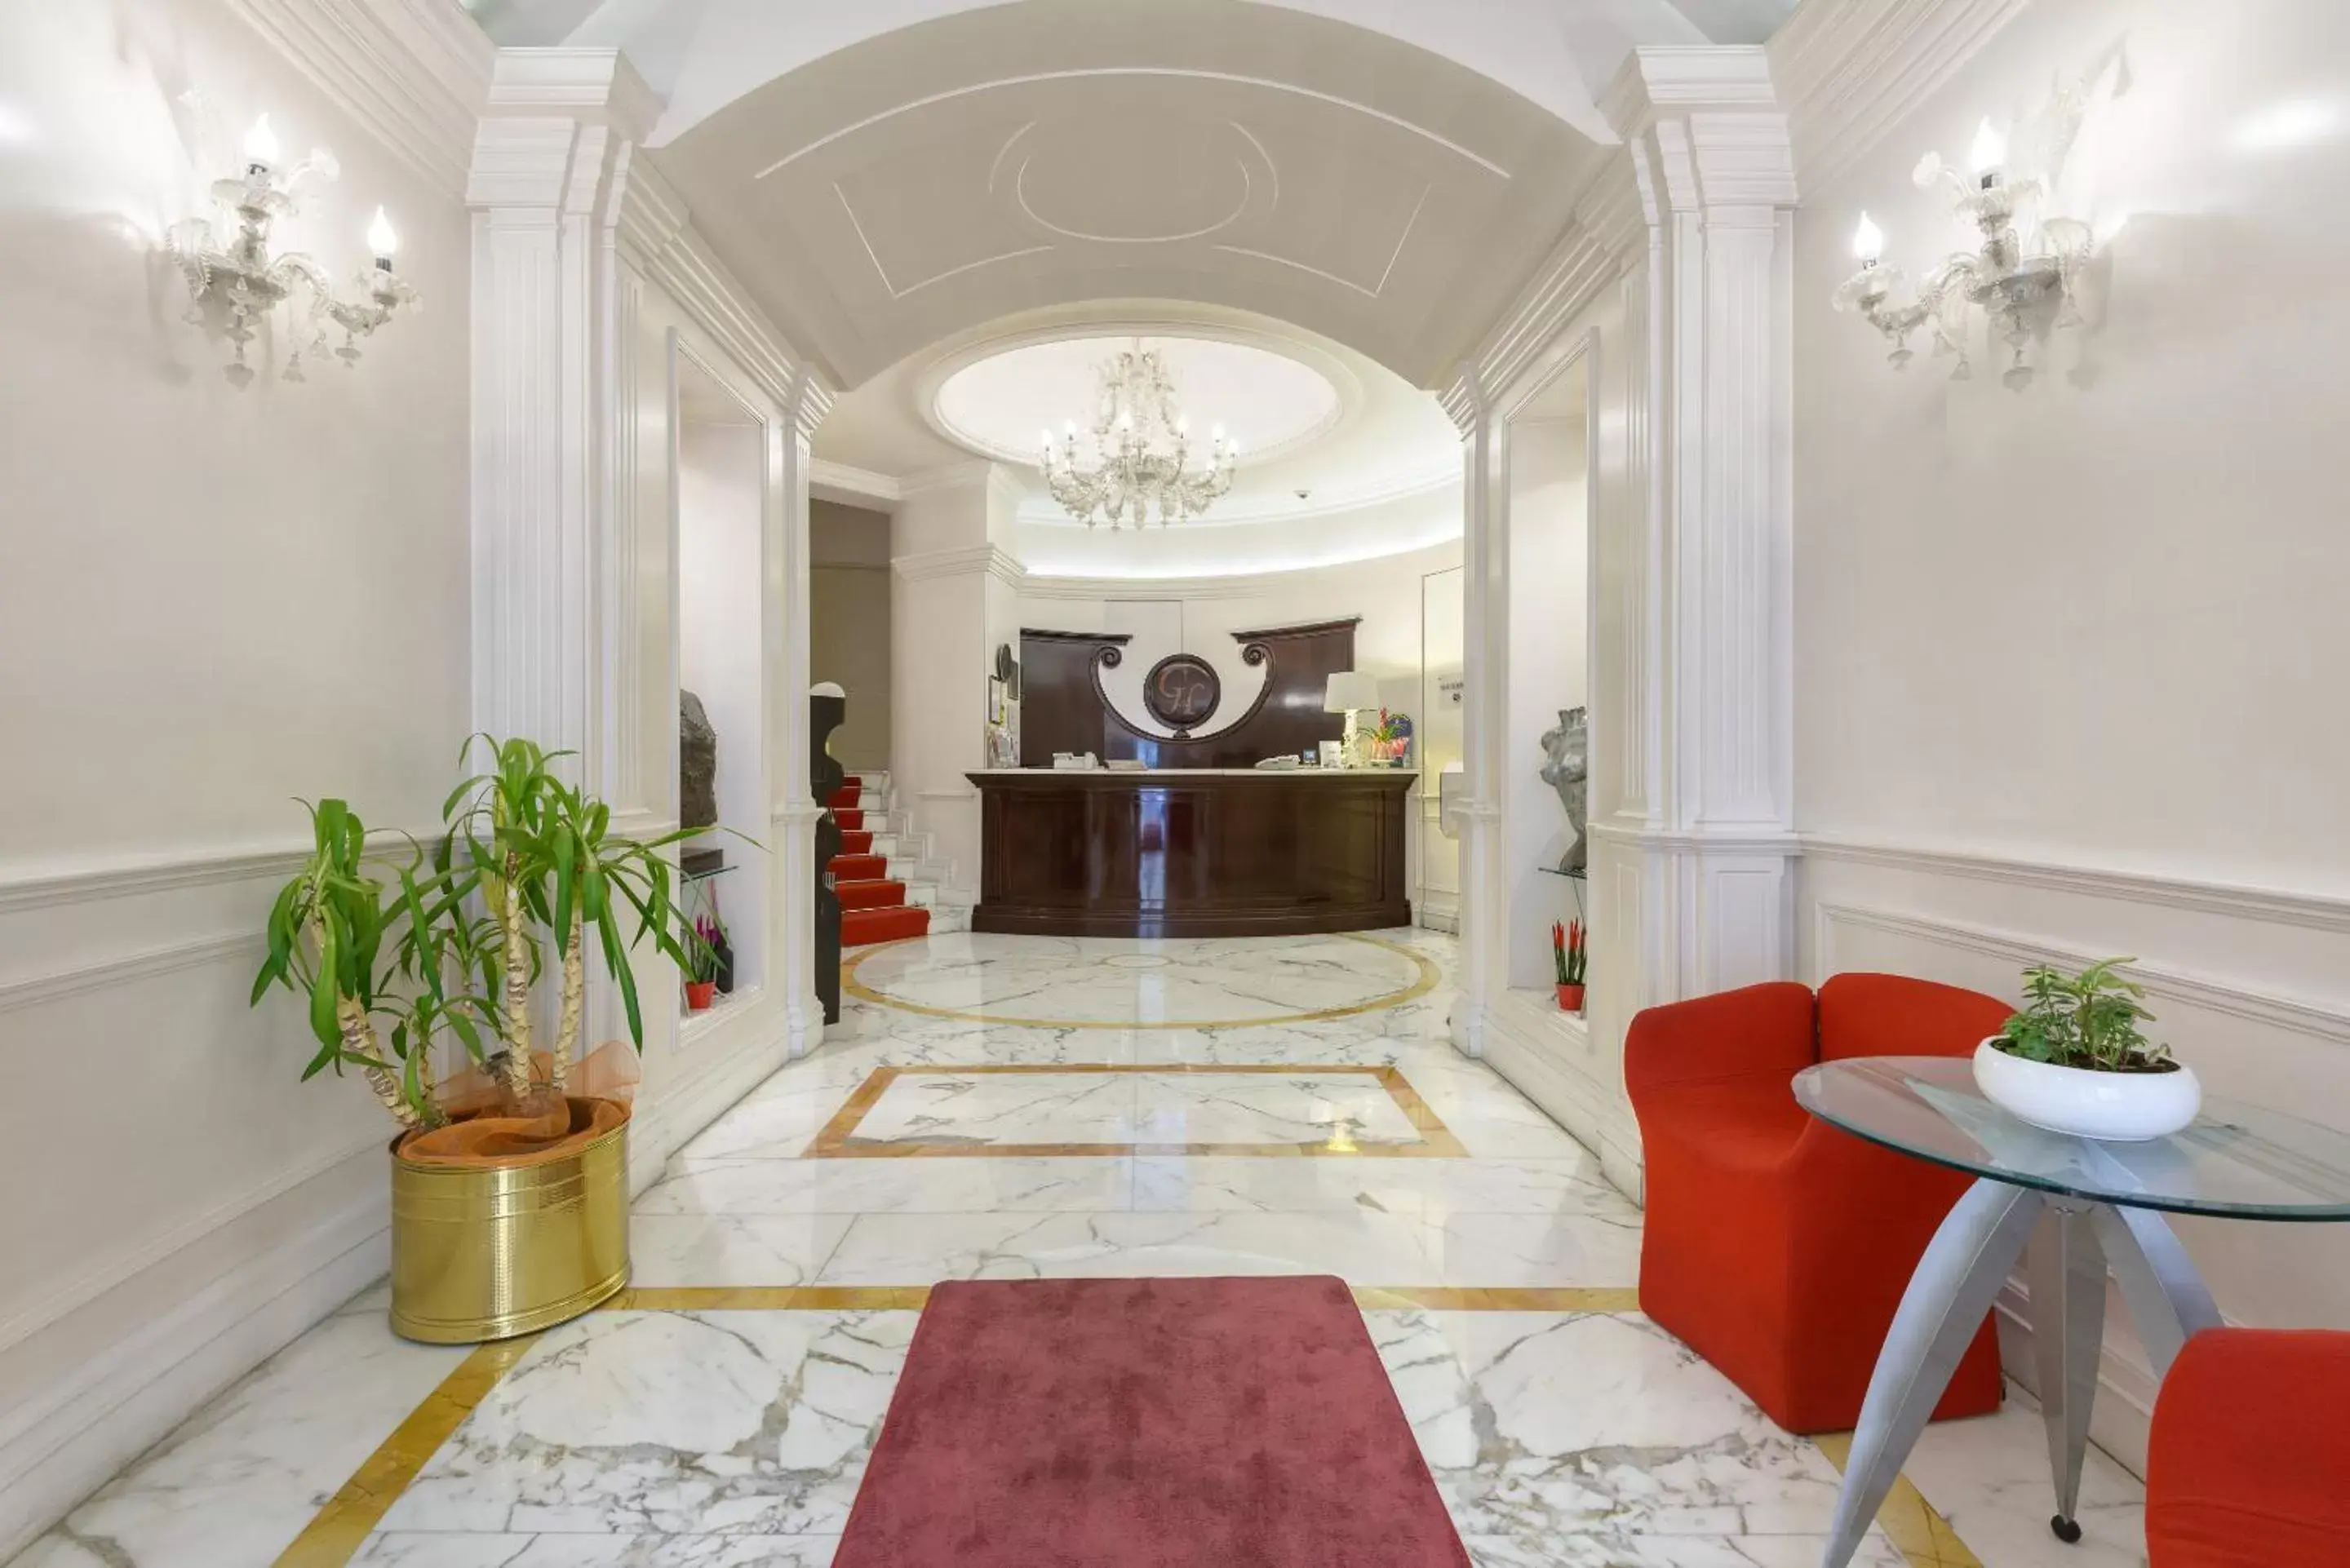 Lobby or reception, Lobby/Reception in Gambrinus Hotel